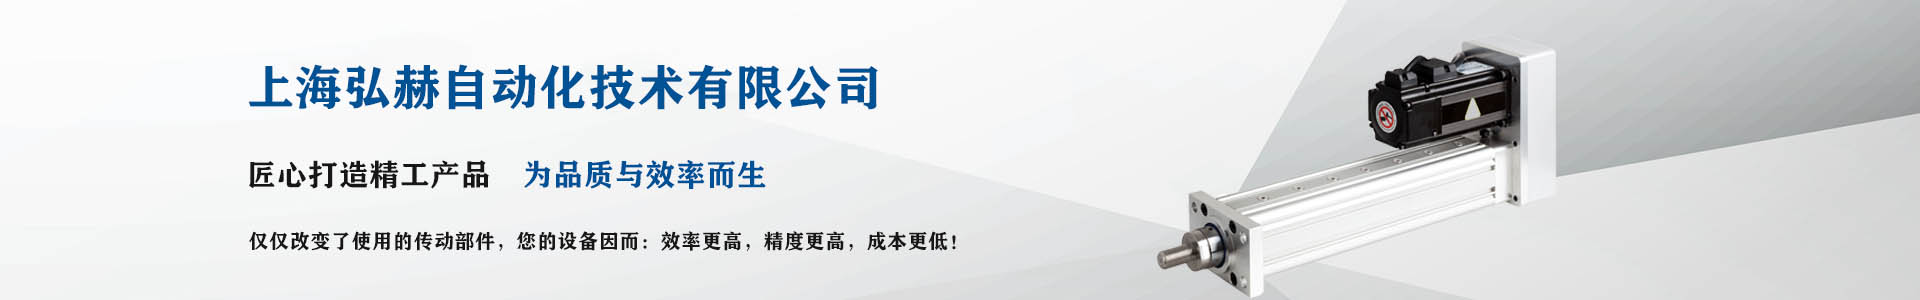 电动缸-伺服电动缸-上海弘赫自动化技术有限公司